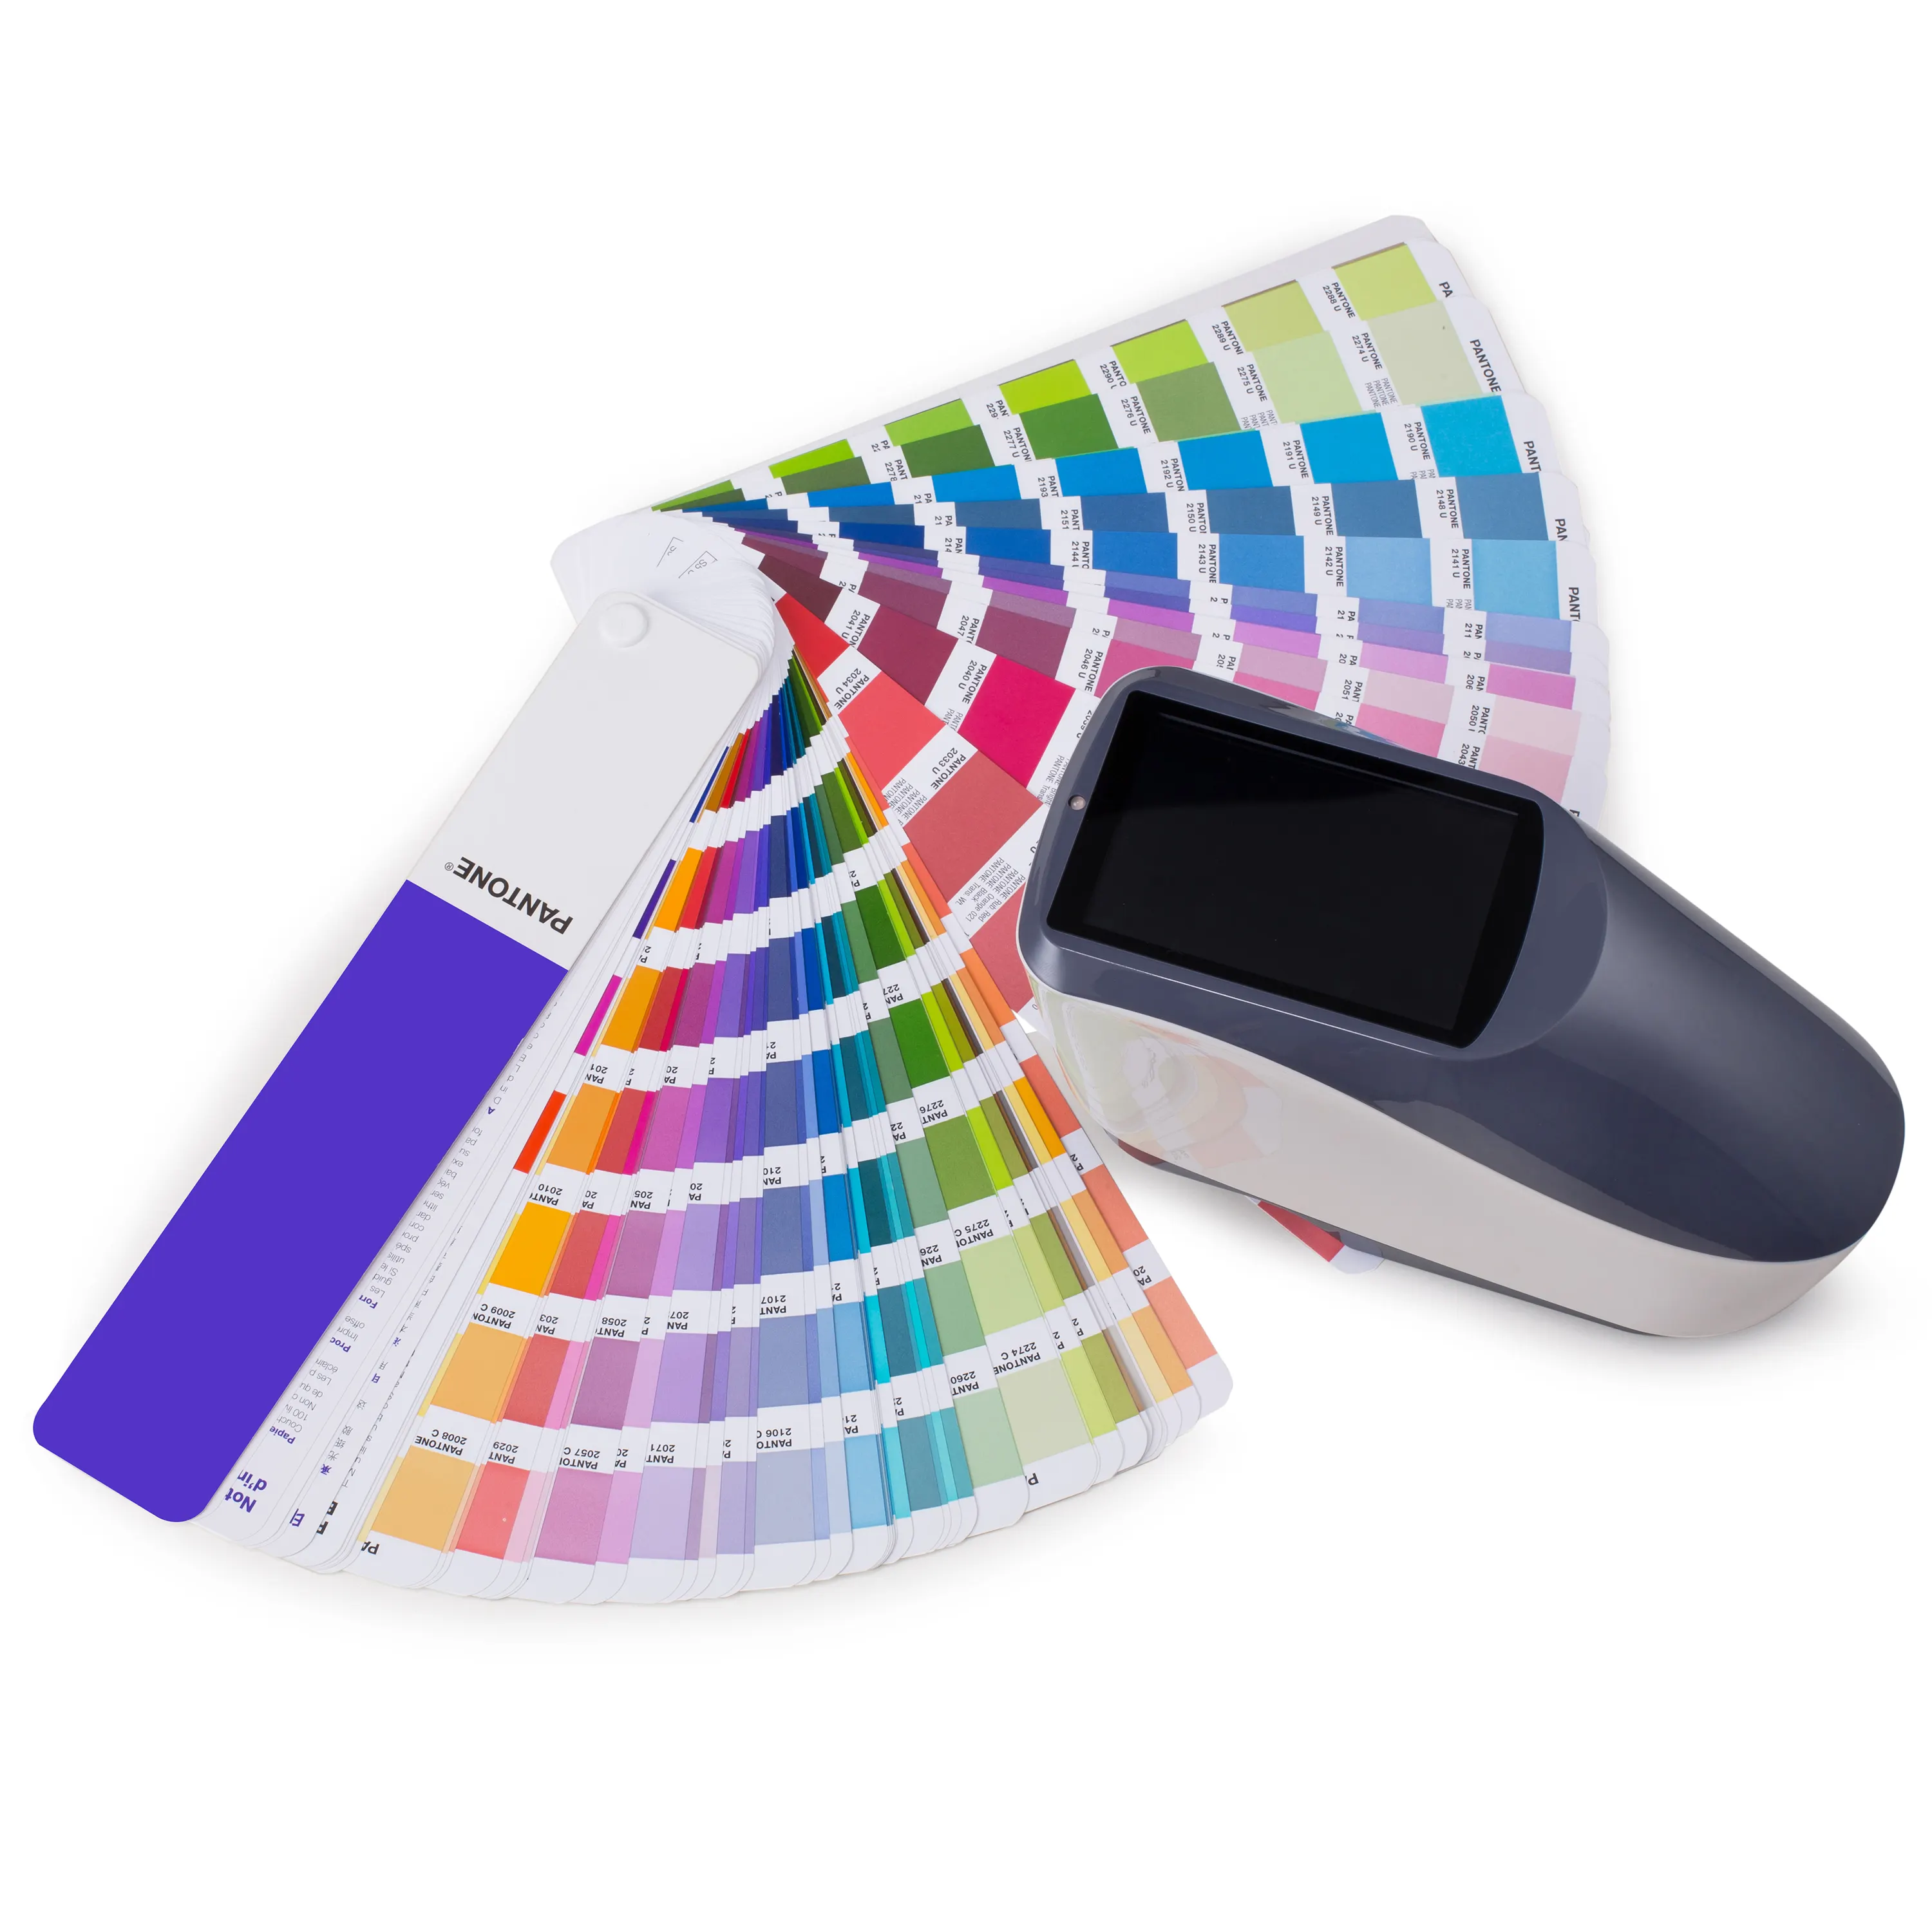 Probador de Color para pintura de plástico, espectrofotómetro de mano con doble apertura de medición, 8 y 4mm, para análisis de cerámica textil